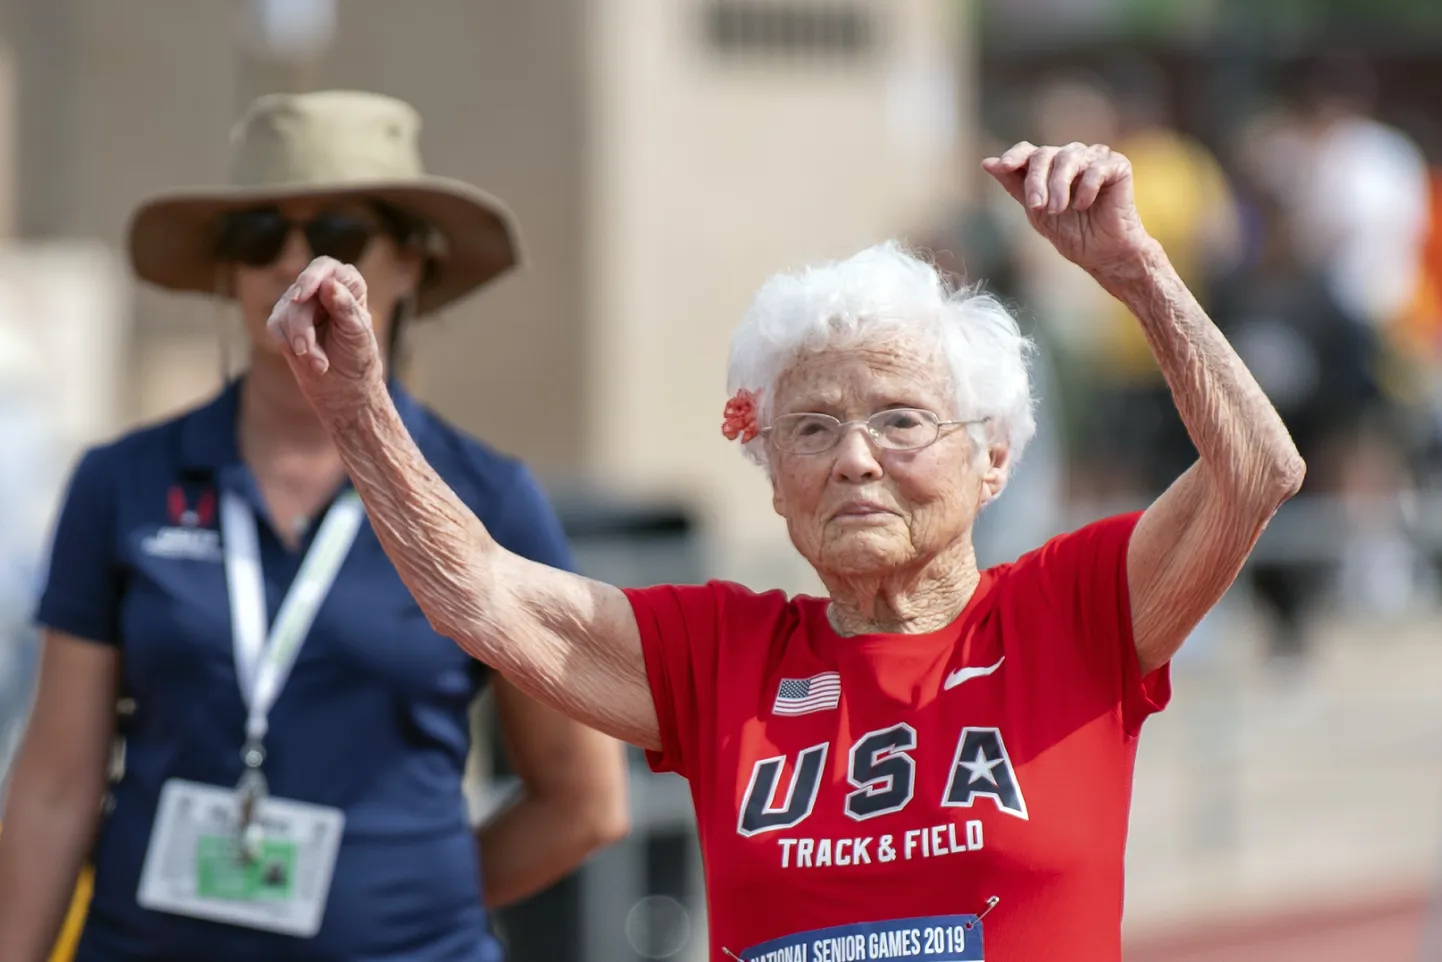 103-aastasena võistlusrajale läinud Julia Hawkins lõpetas võistlusraja küll aeglasemalt, kui paar aastat tagasi, aga jäi tulemusega väga rahule. Joostes kinnitab ta sageli oma juustesse lilli - nii ka seekord.